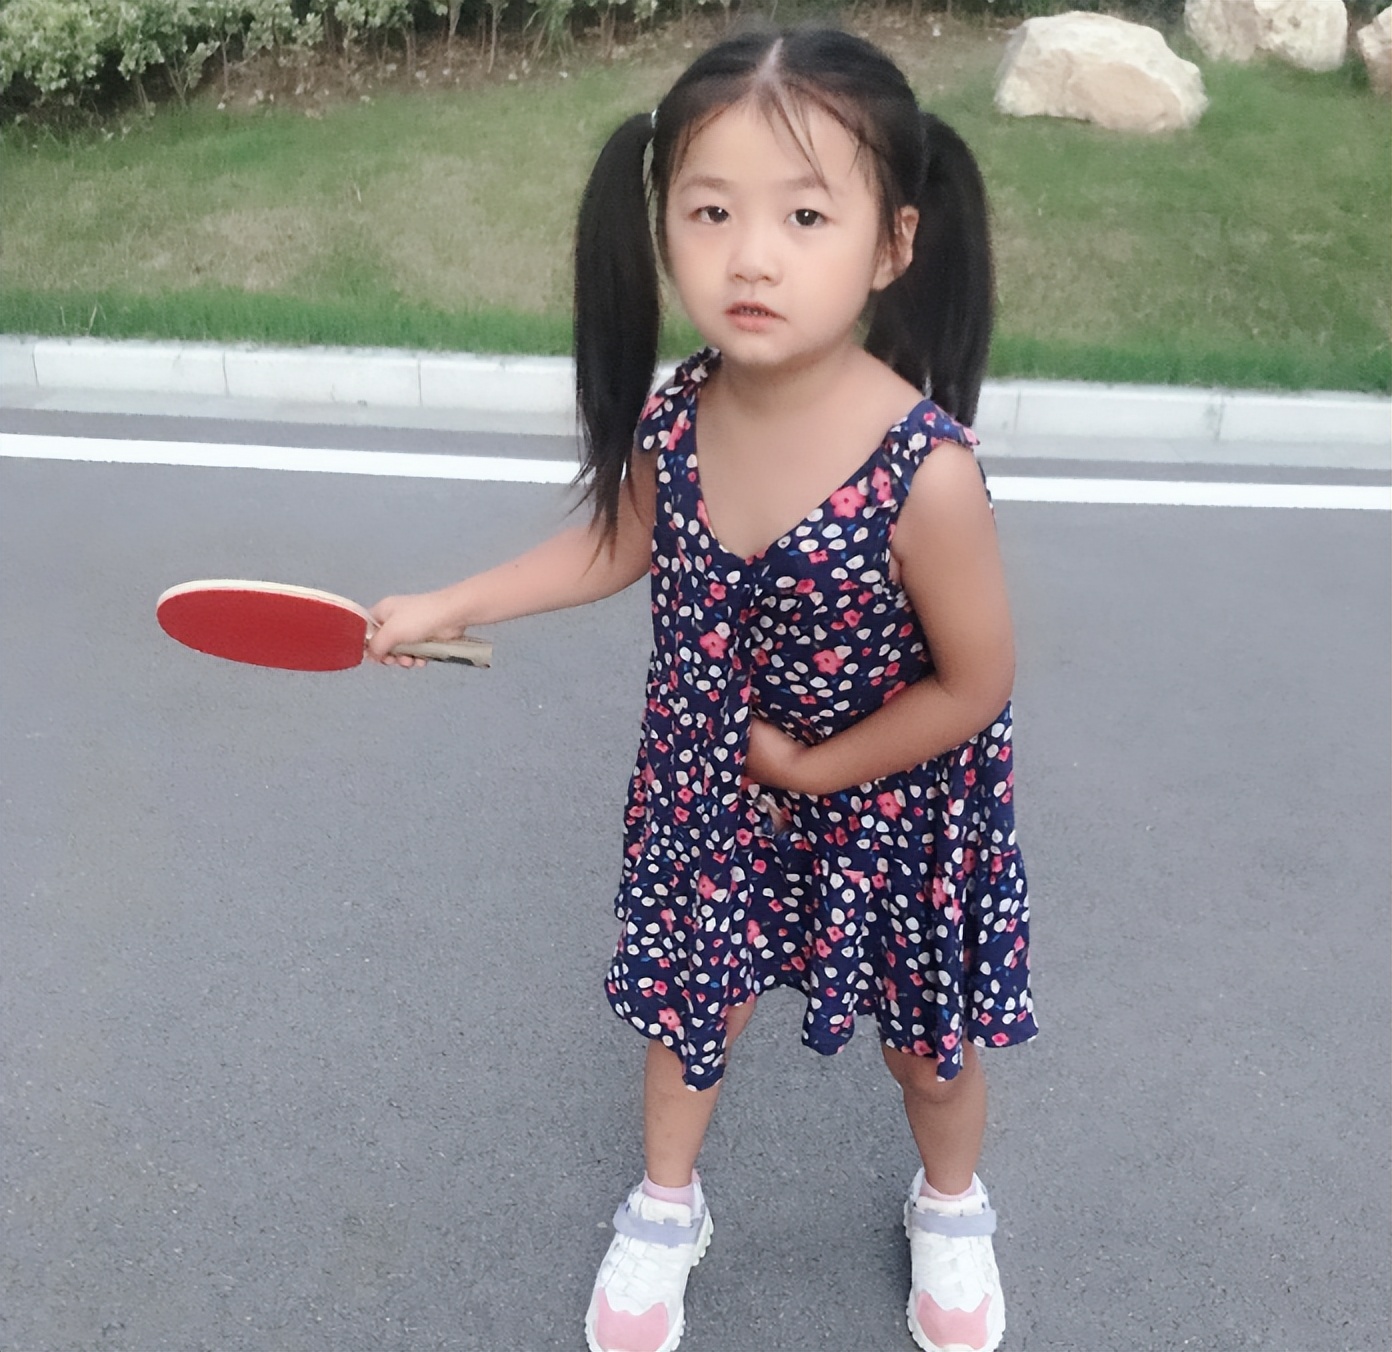 山东乒乓神童神似福原爱,5岁获全国少儿总冠军，与张继科同台竞技